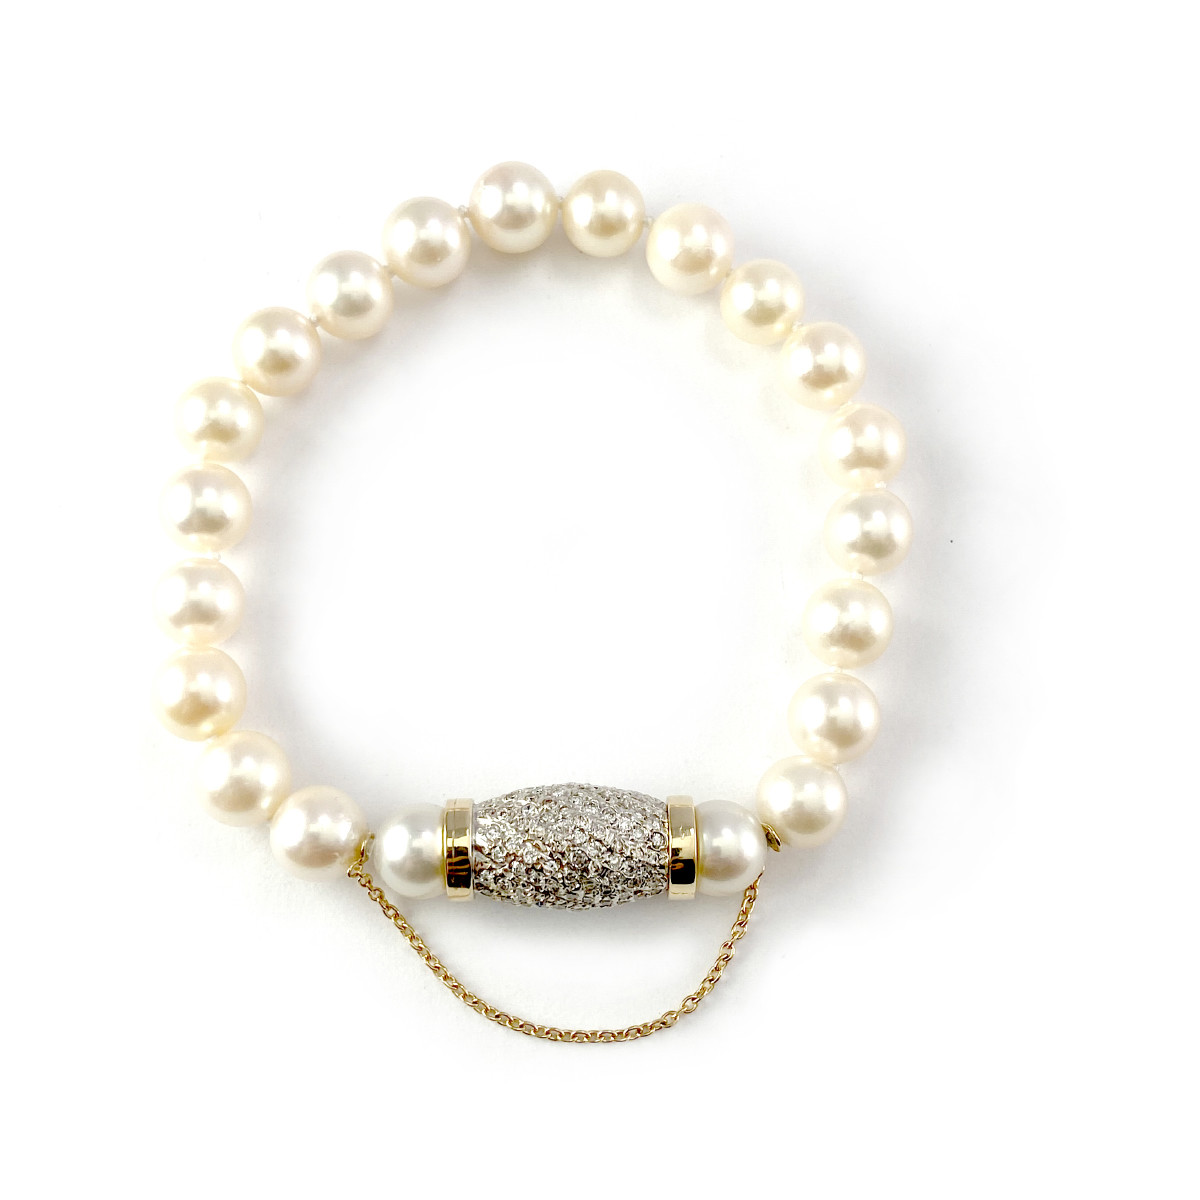 Bracelet d'occasion or 585 jaune perles du Japon diamants 21 cm - vue 2